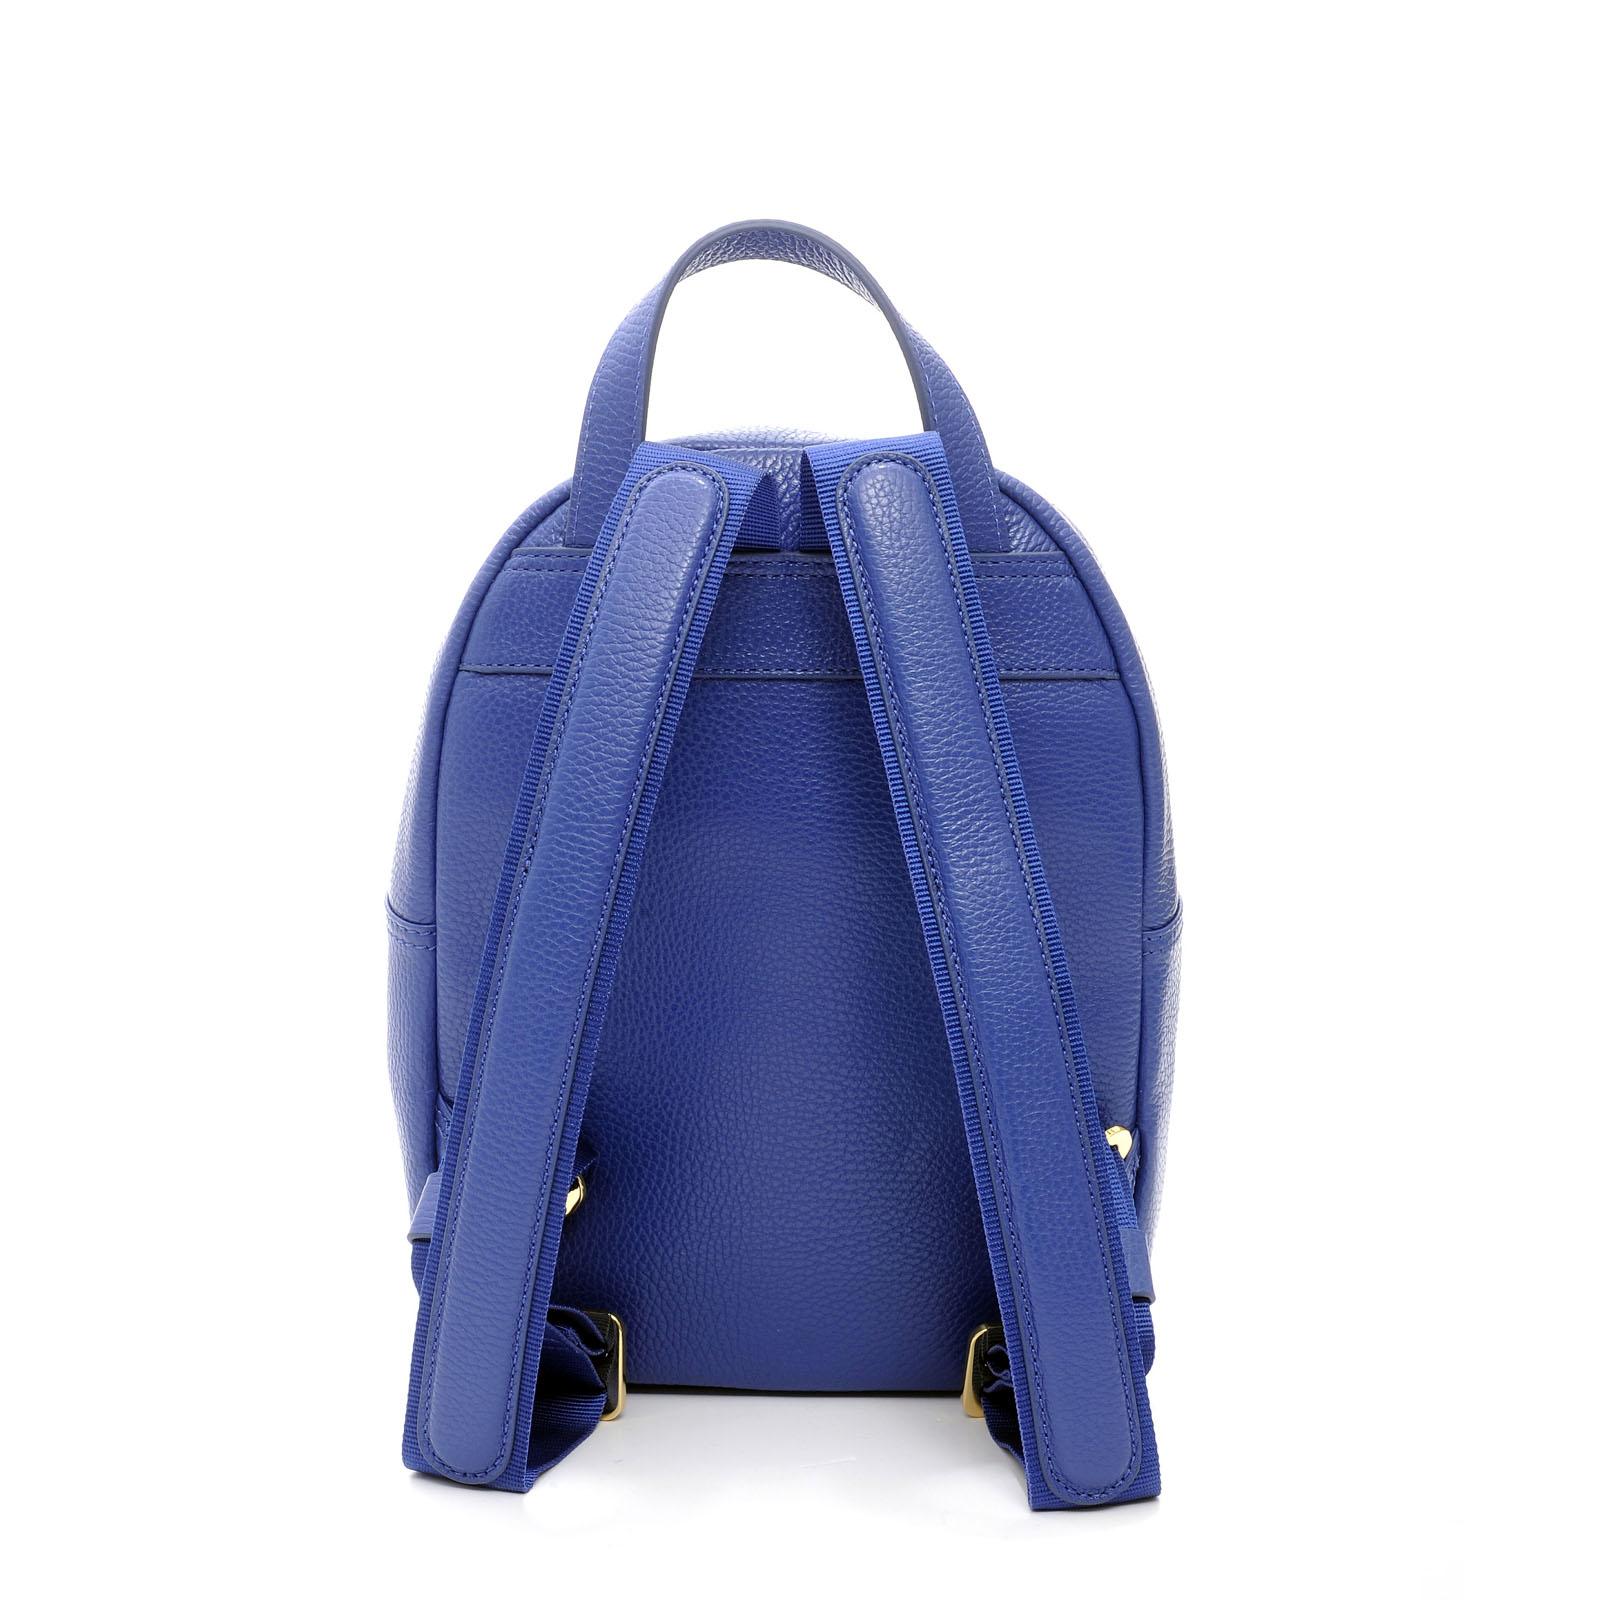 Small Woman Backpack Tiffany BLUE ROYAL 